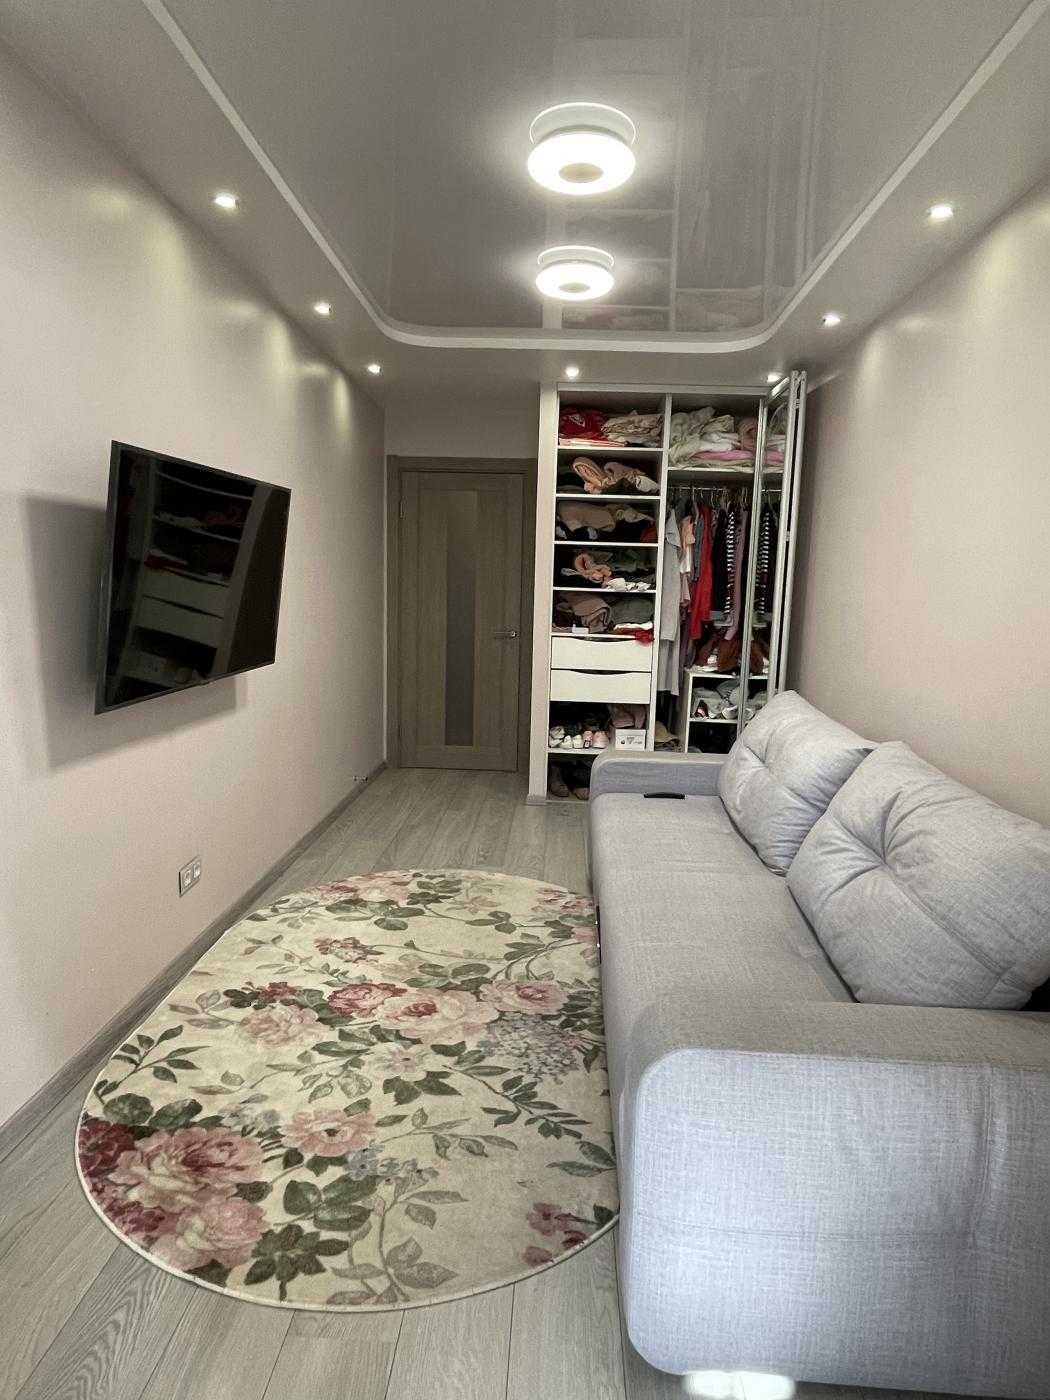 Уютная 2 х комнатная квартира с ремонтом мебелью со всем необходимым